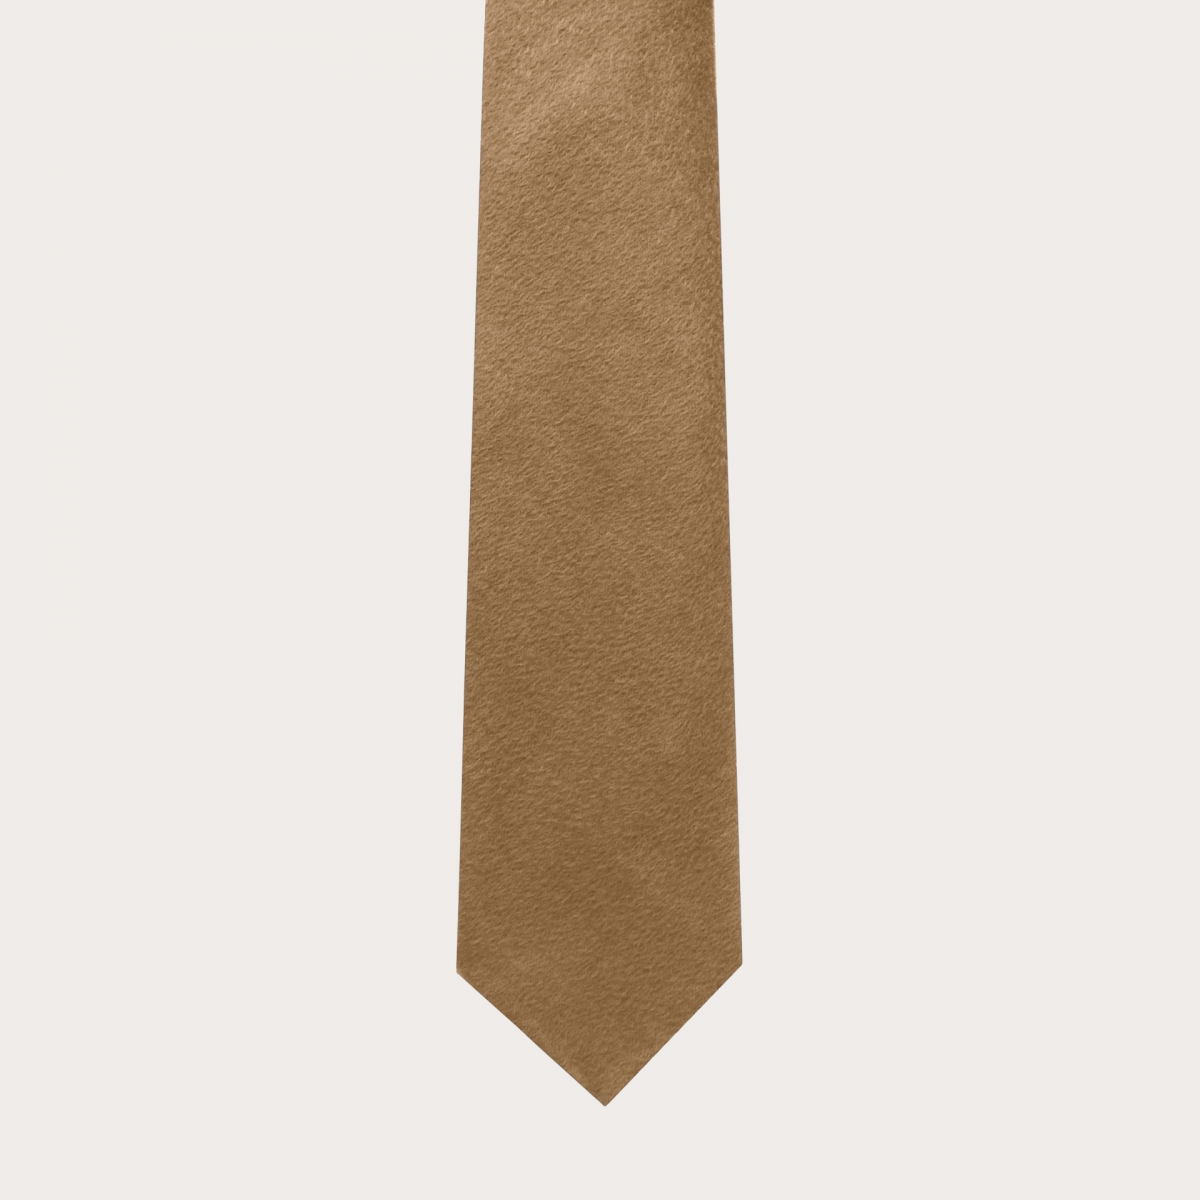 Corbata de cachemir y algodón sin forro, beige